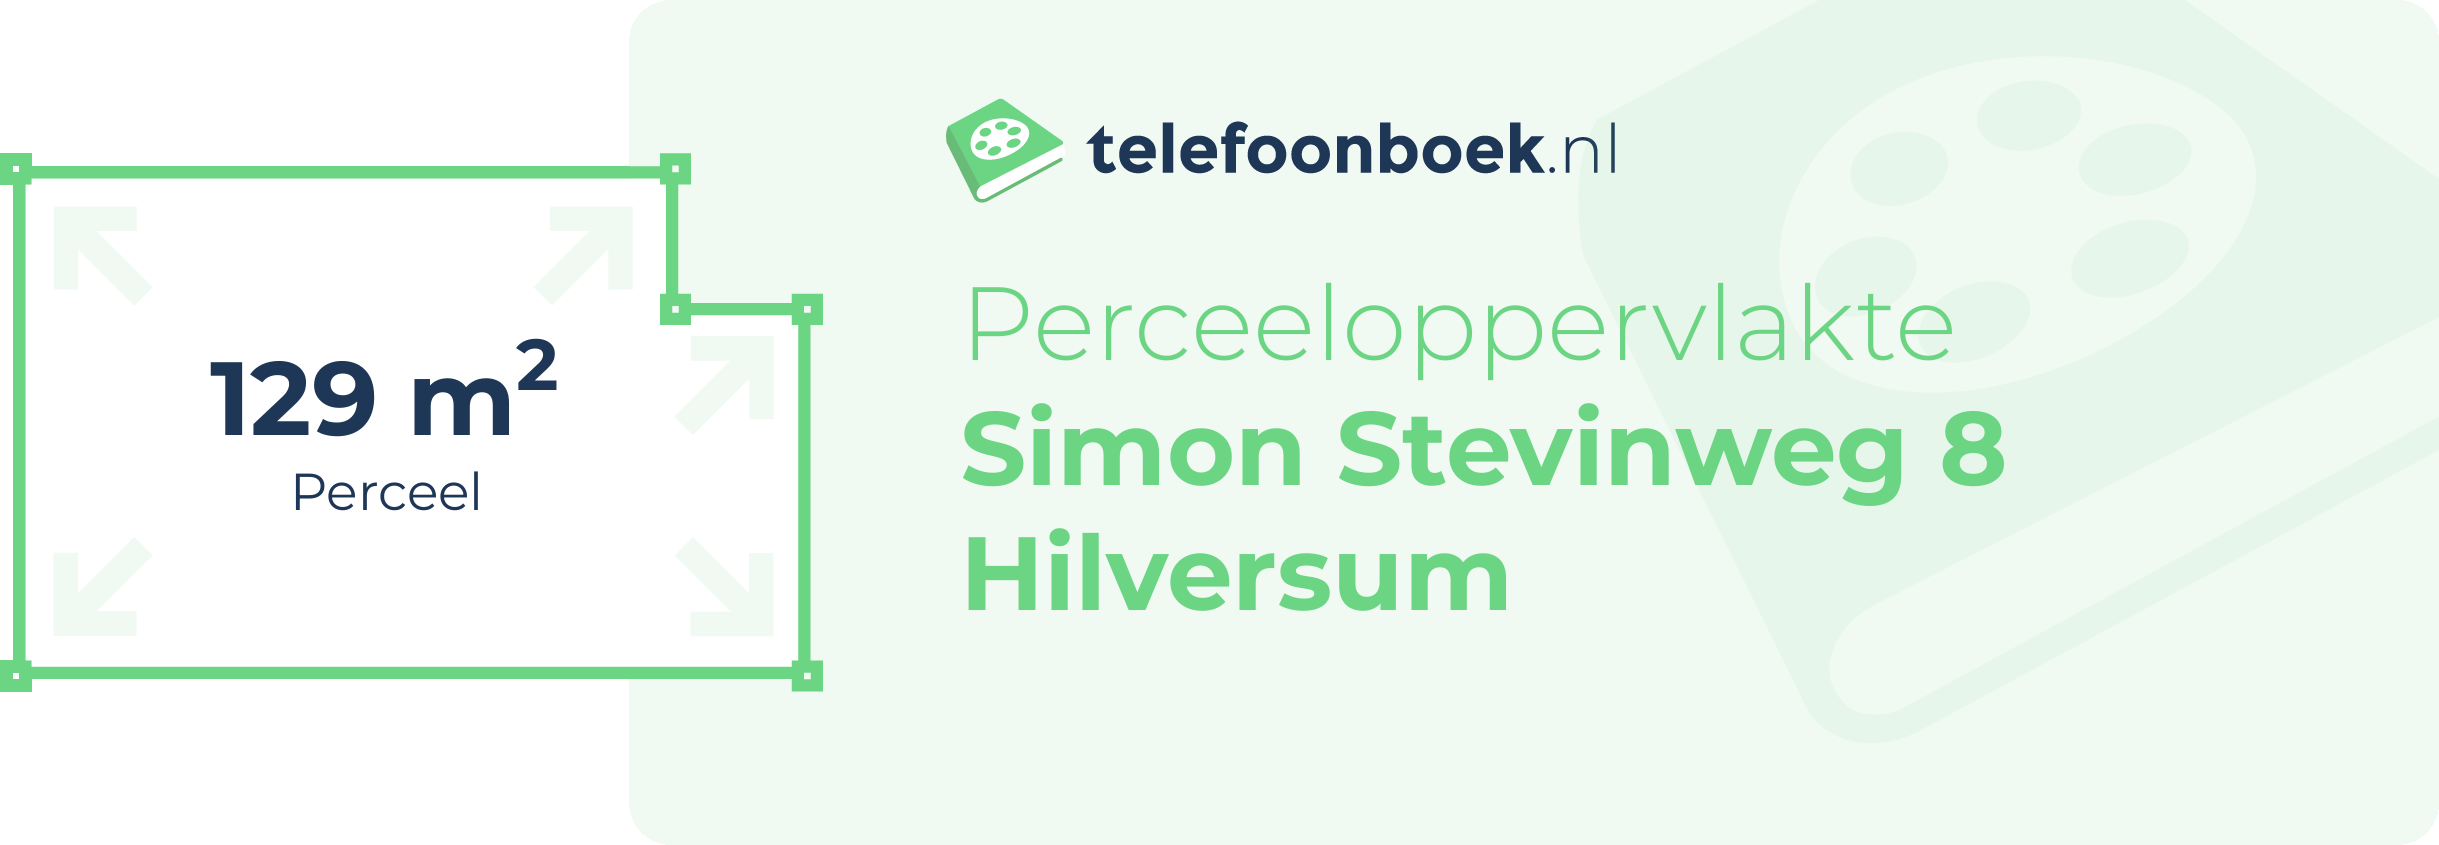 Perceeloppervlakte Simon Stevinweg 8 Hilversum